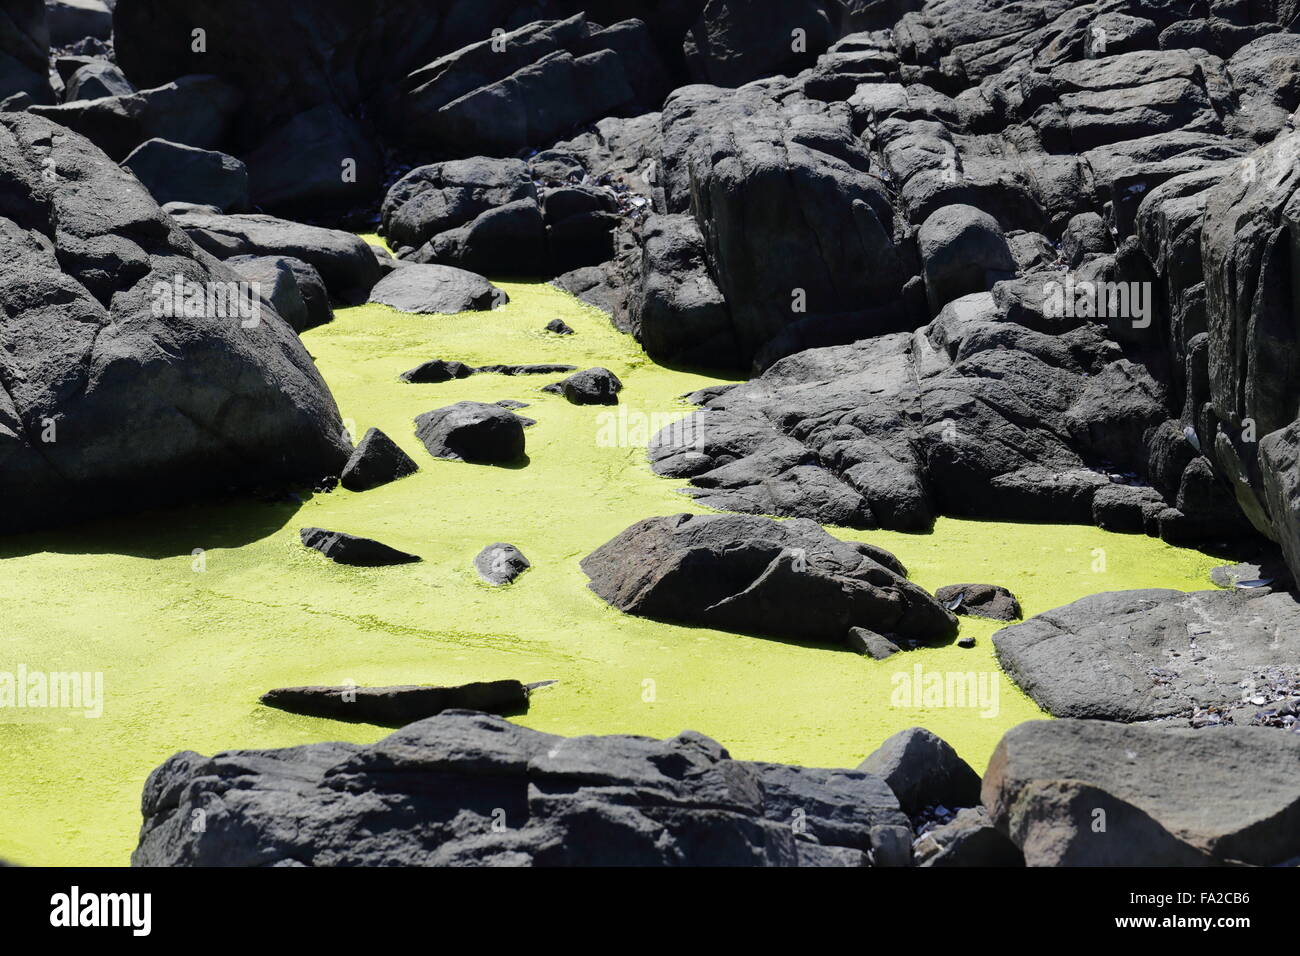 Llena de alga verde brillante piscina rock en la costa rocosa de Yzerfontein en la costa oeste de Sudáfrica Foto de stock